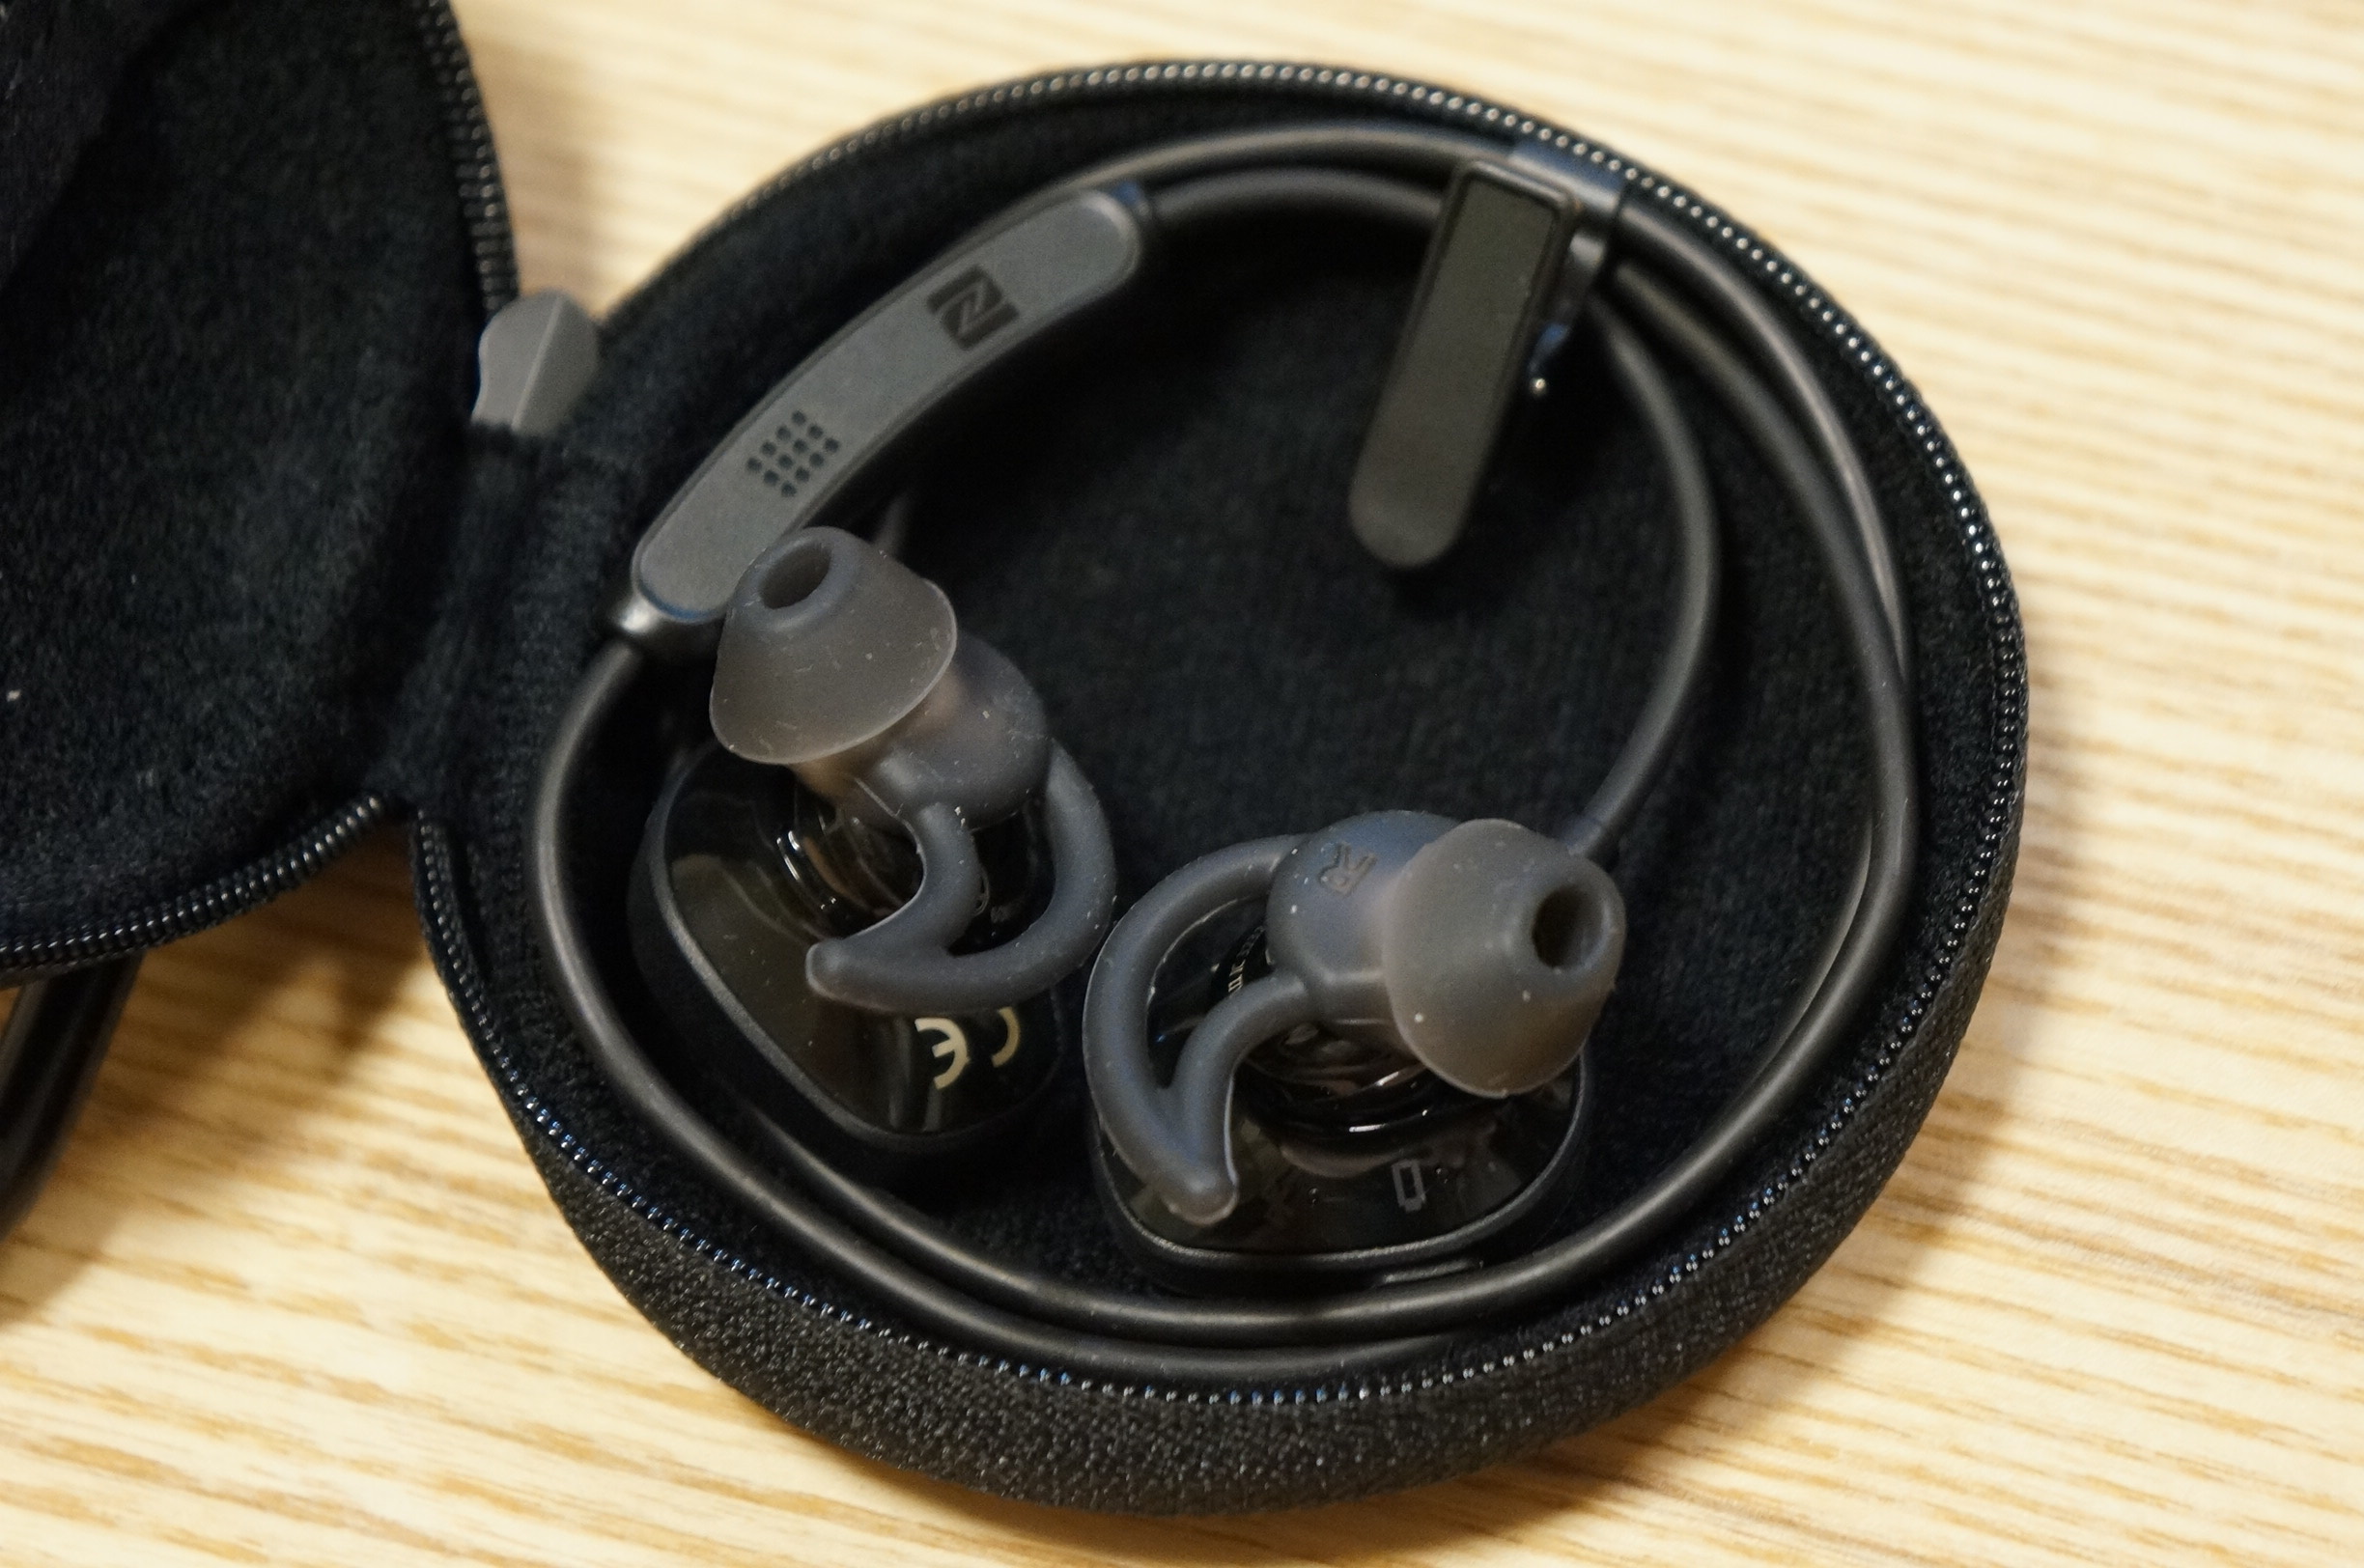 発売されたばかりの Bose Soundsport Wireless Headphones を開封レビューします モノ好き ブログ